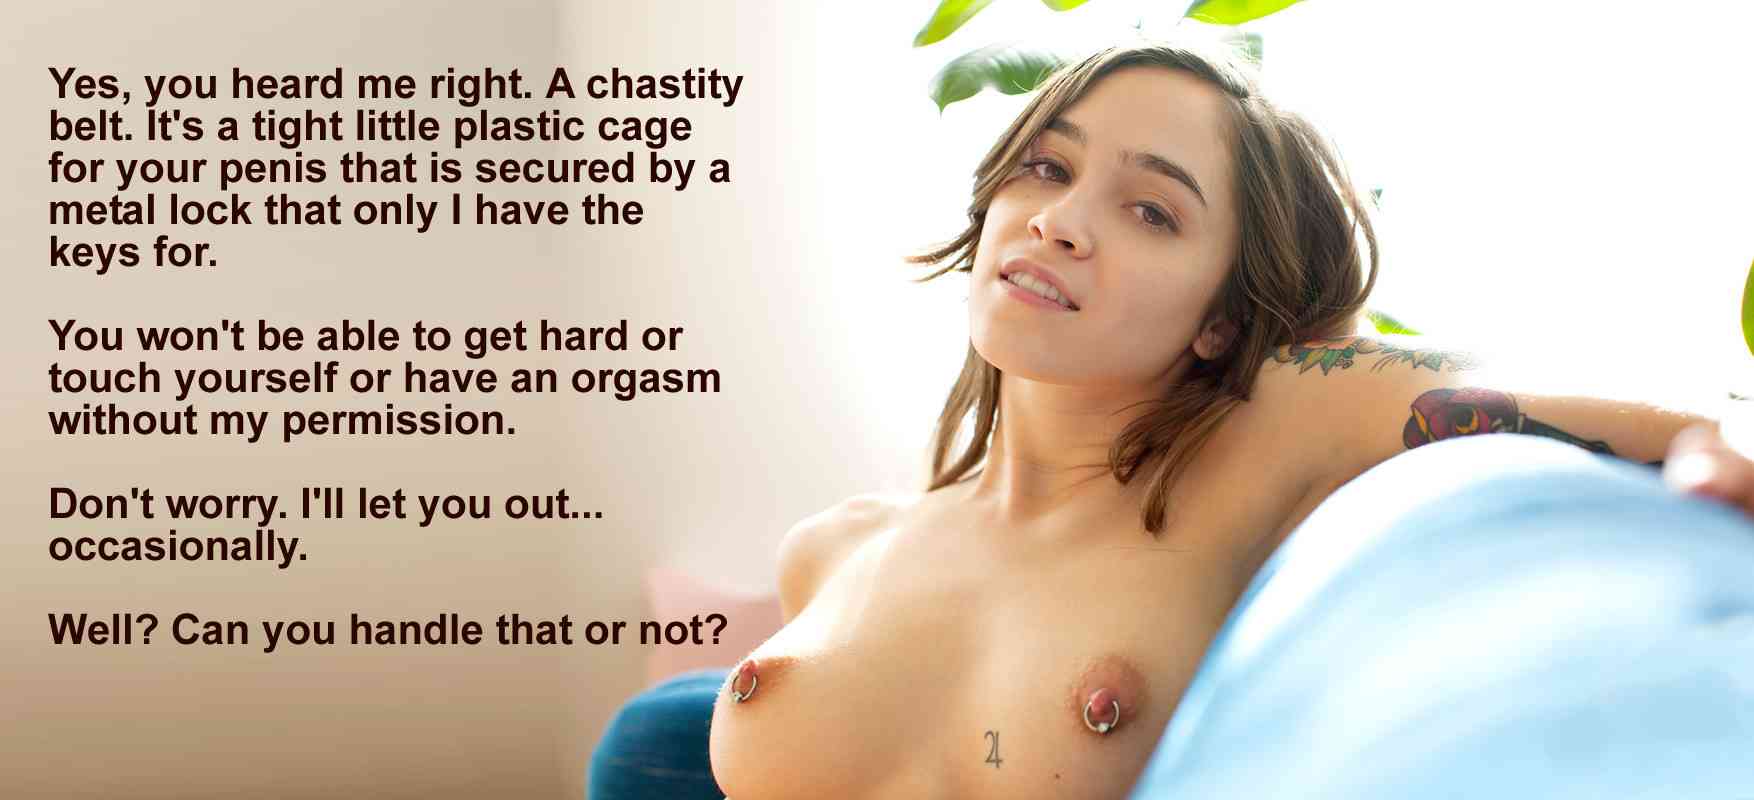 Captions Amateur Porn - female chastity captions sexpics download erotic and porn images - XXXPicz